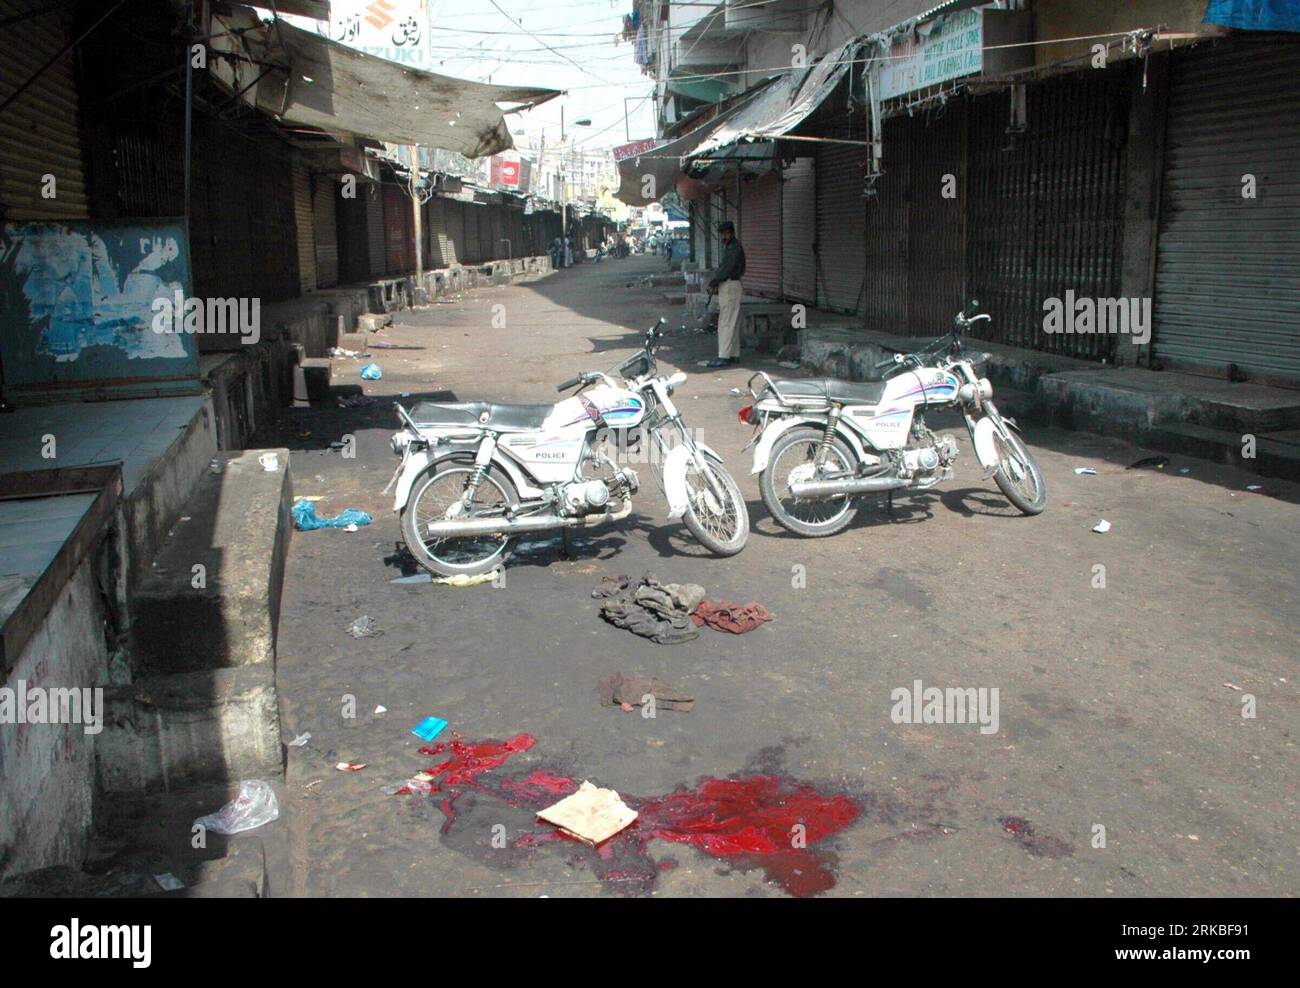 Bildnummer: 54550348 Datum: 20.10.2010 Copyright: imago/Xinhua (101020)-- KARACHI, 20 ottobre 2010 (Xinhua) -- macchie di sangue si vedono a terra dopo una sparatoria nella città portuale del Pakistan meridionale di Karachi, 20 ottobre 2010. Almeno 70 sono stati uccisi e oltre 100 sono rimasti feriti a Karachi durante l'uccisione del bersaglio negli ultimi 4 giorni. (XinhuaPhoto/Arshad) PAKISTAN-KARACHI-UNREST PUBLICATIONxNOTxINxCHN Gesellschaft Unruhen premiumd kbdig xkg 2010 quer o0 Blut Straße Blutspur Bildnummer 54550348 Date 20 10 2010 Copyright Imago XINHUA Karachi OCT 20 2010 XINHUA IS Lakes ON the Ground After A Shootout IN S. Foto Stock